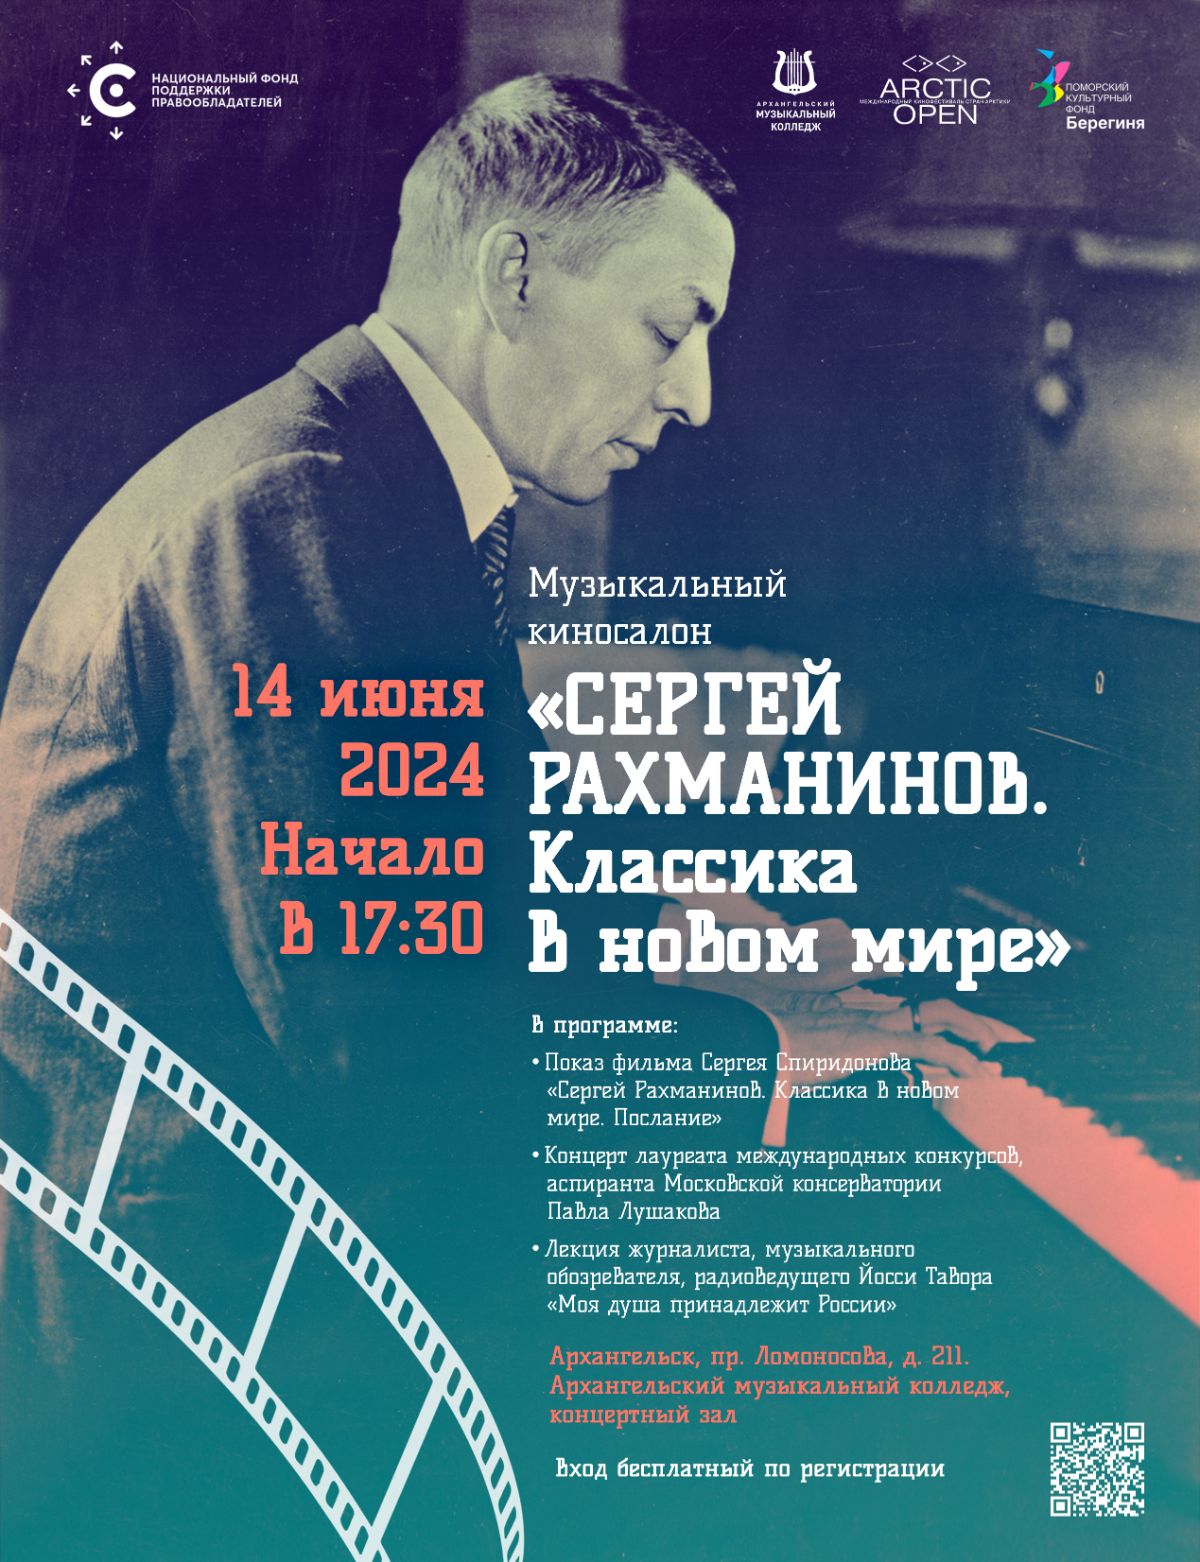 НФПП приглашает посетить музыкальный киносалон «Сергей Рахманинов. Классика в новом мире» в Архангельске